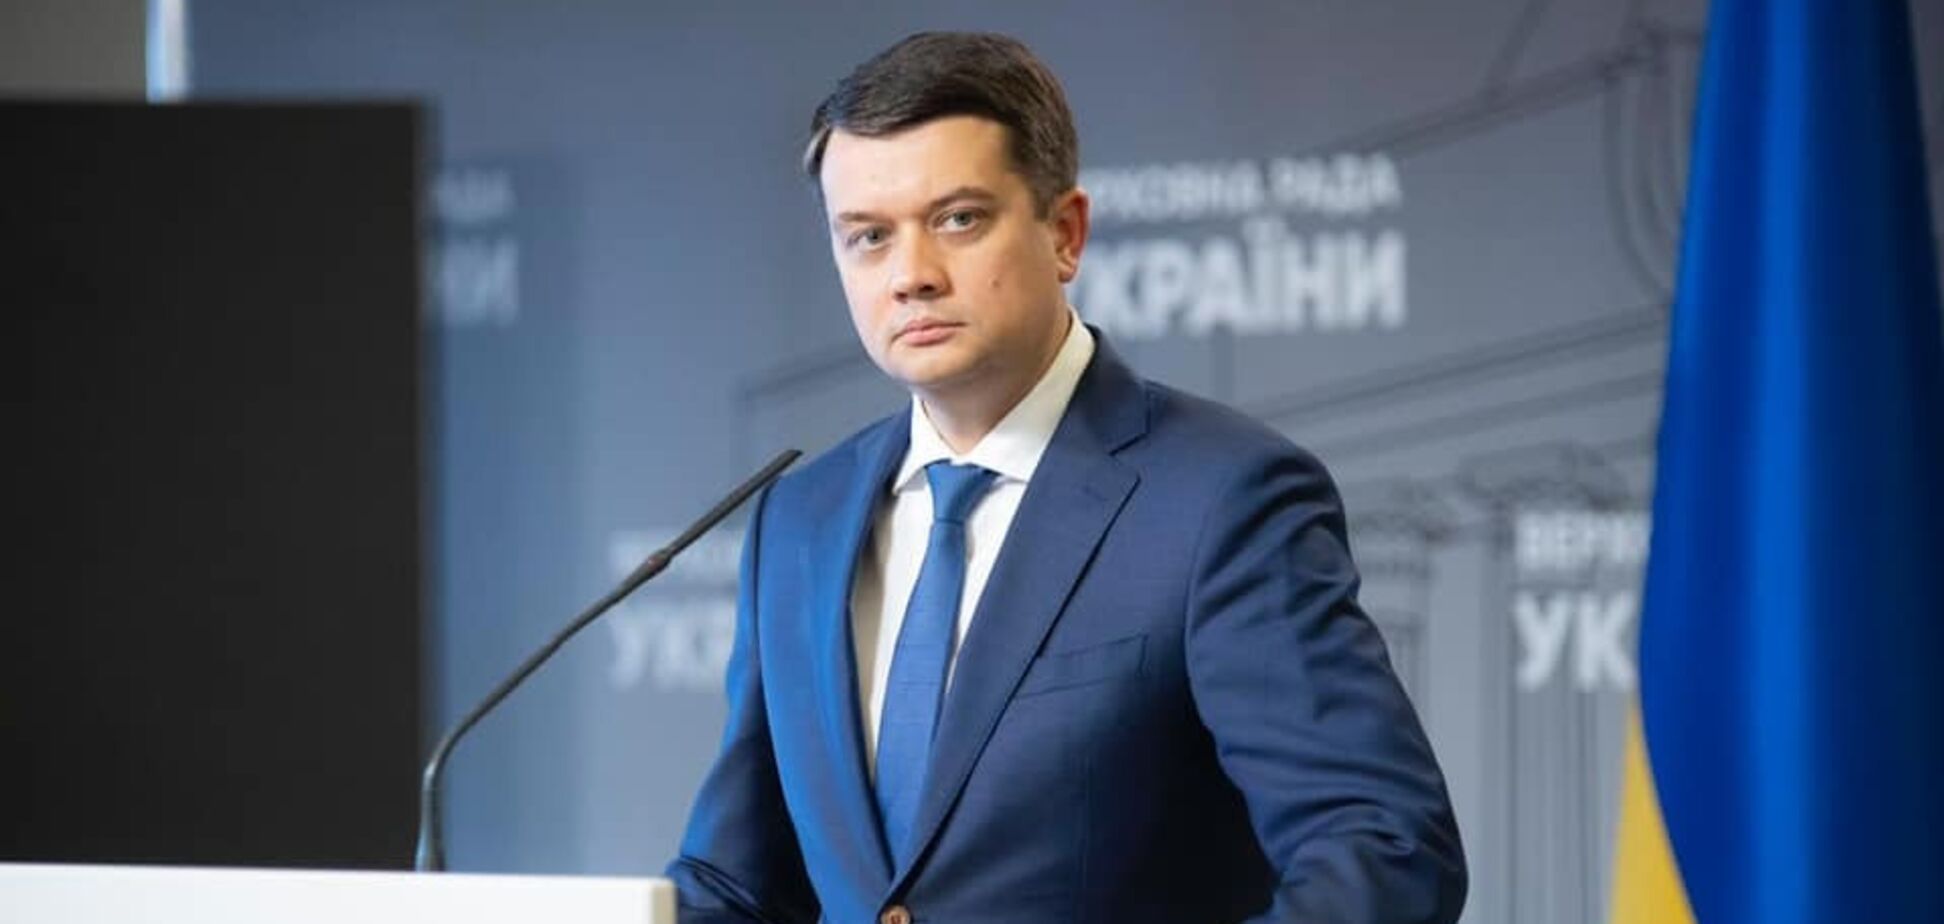 Разумков заявил, что не подпишет сфальсифицированный текст законопроекта об олигархах